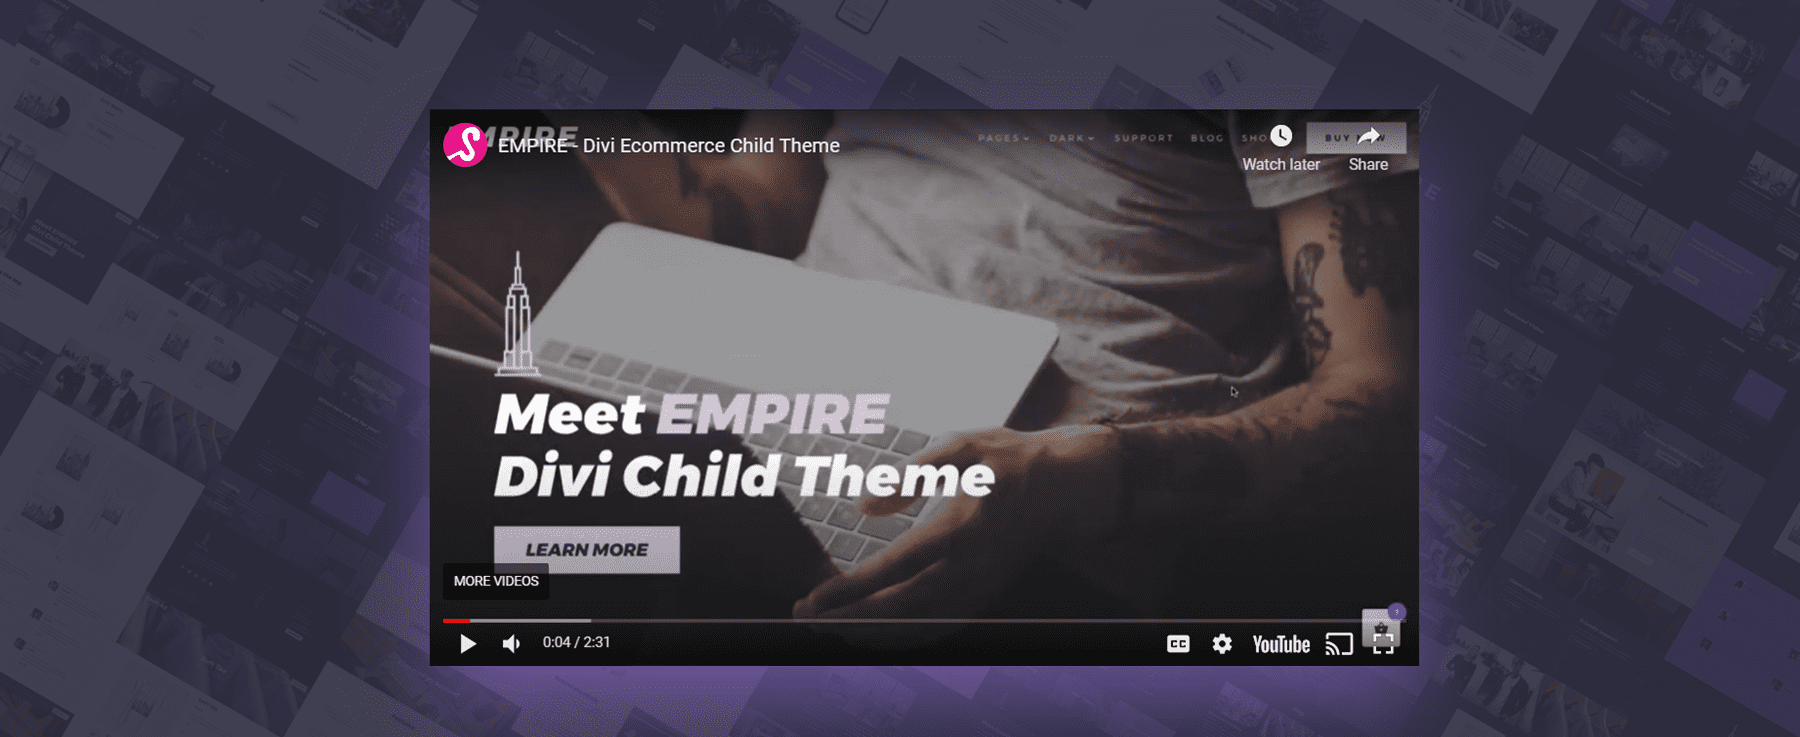 Empire Divi Child Theme Home